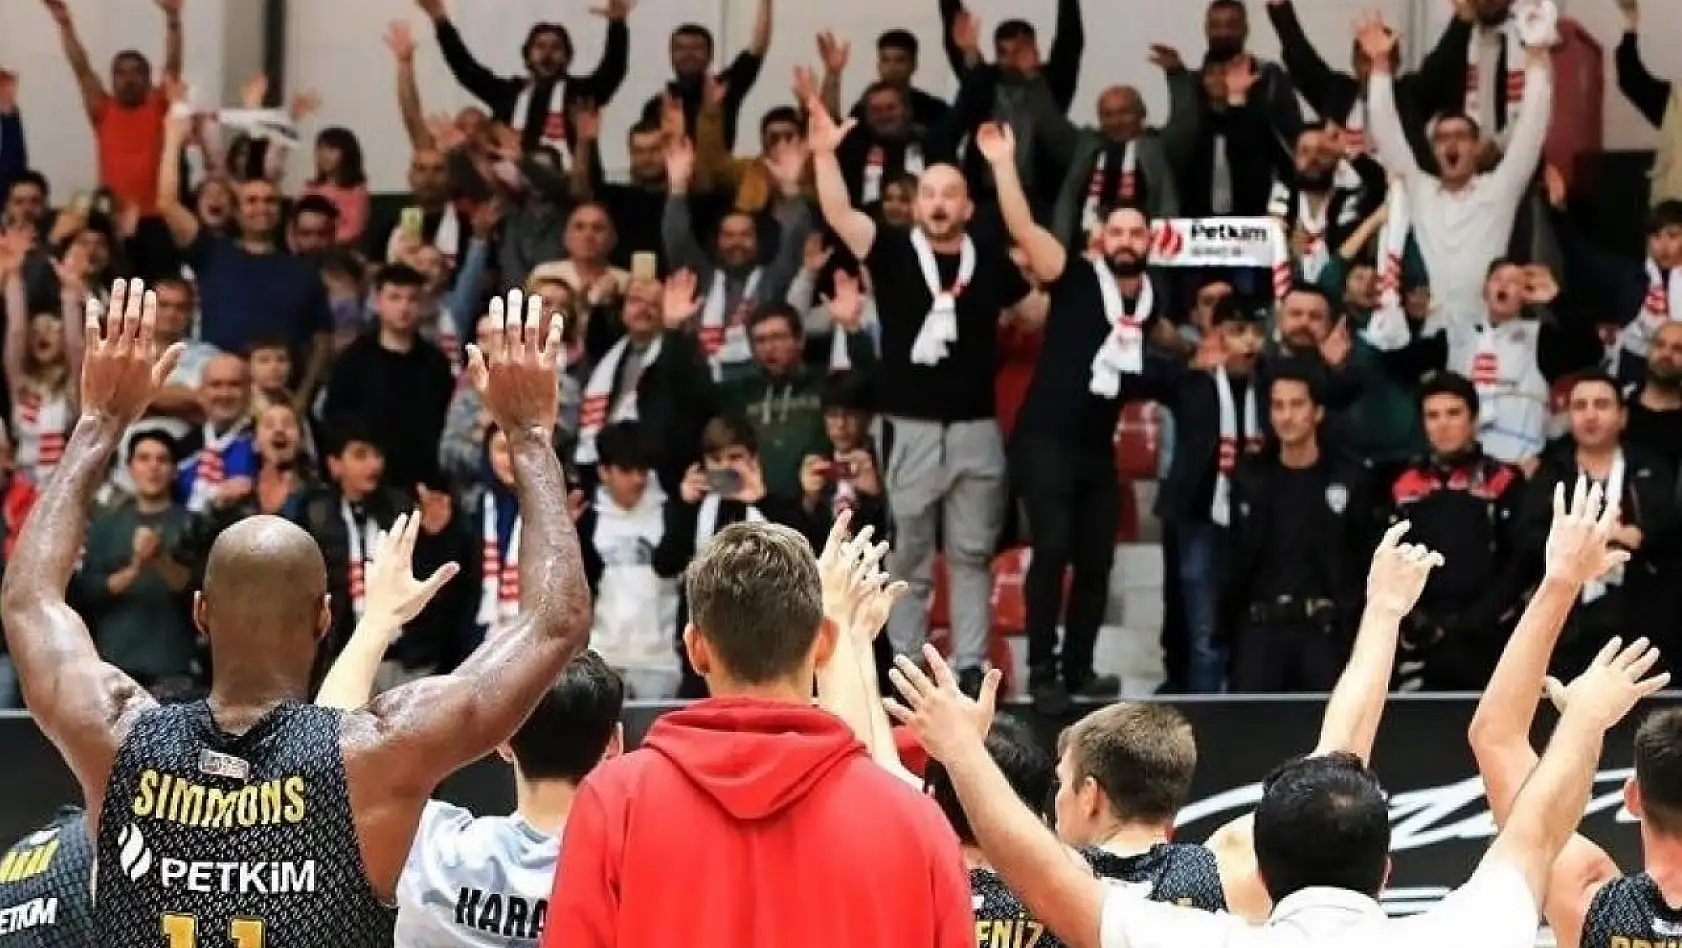 Aliağa Petkimspor, Büyükçekmece Basketbol'a konuk olacak